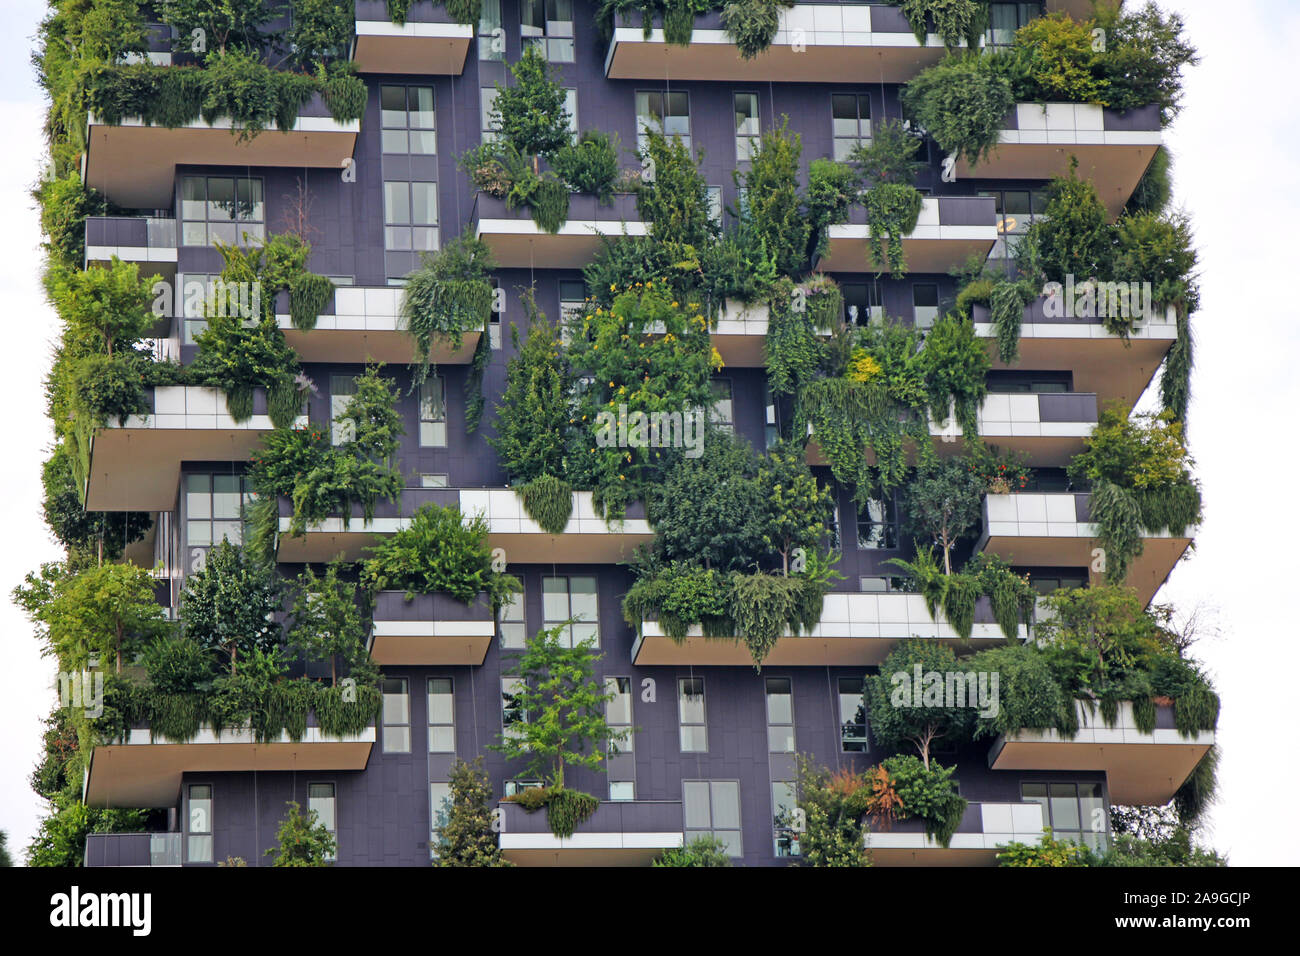 Mailand, Italien - 27. Juni 2017: Wohngebäude Bosco Verticale. Vertikale Wald Wohntürme im Geschäftsviertel von Mailand, Italien Stockfoto